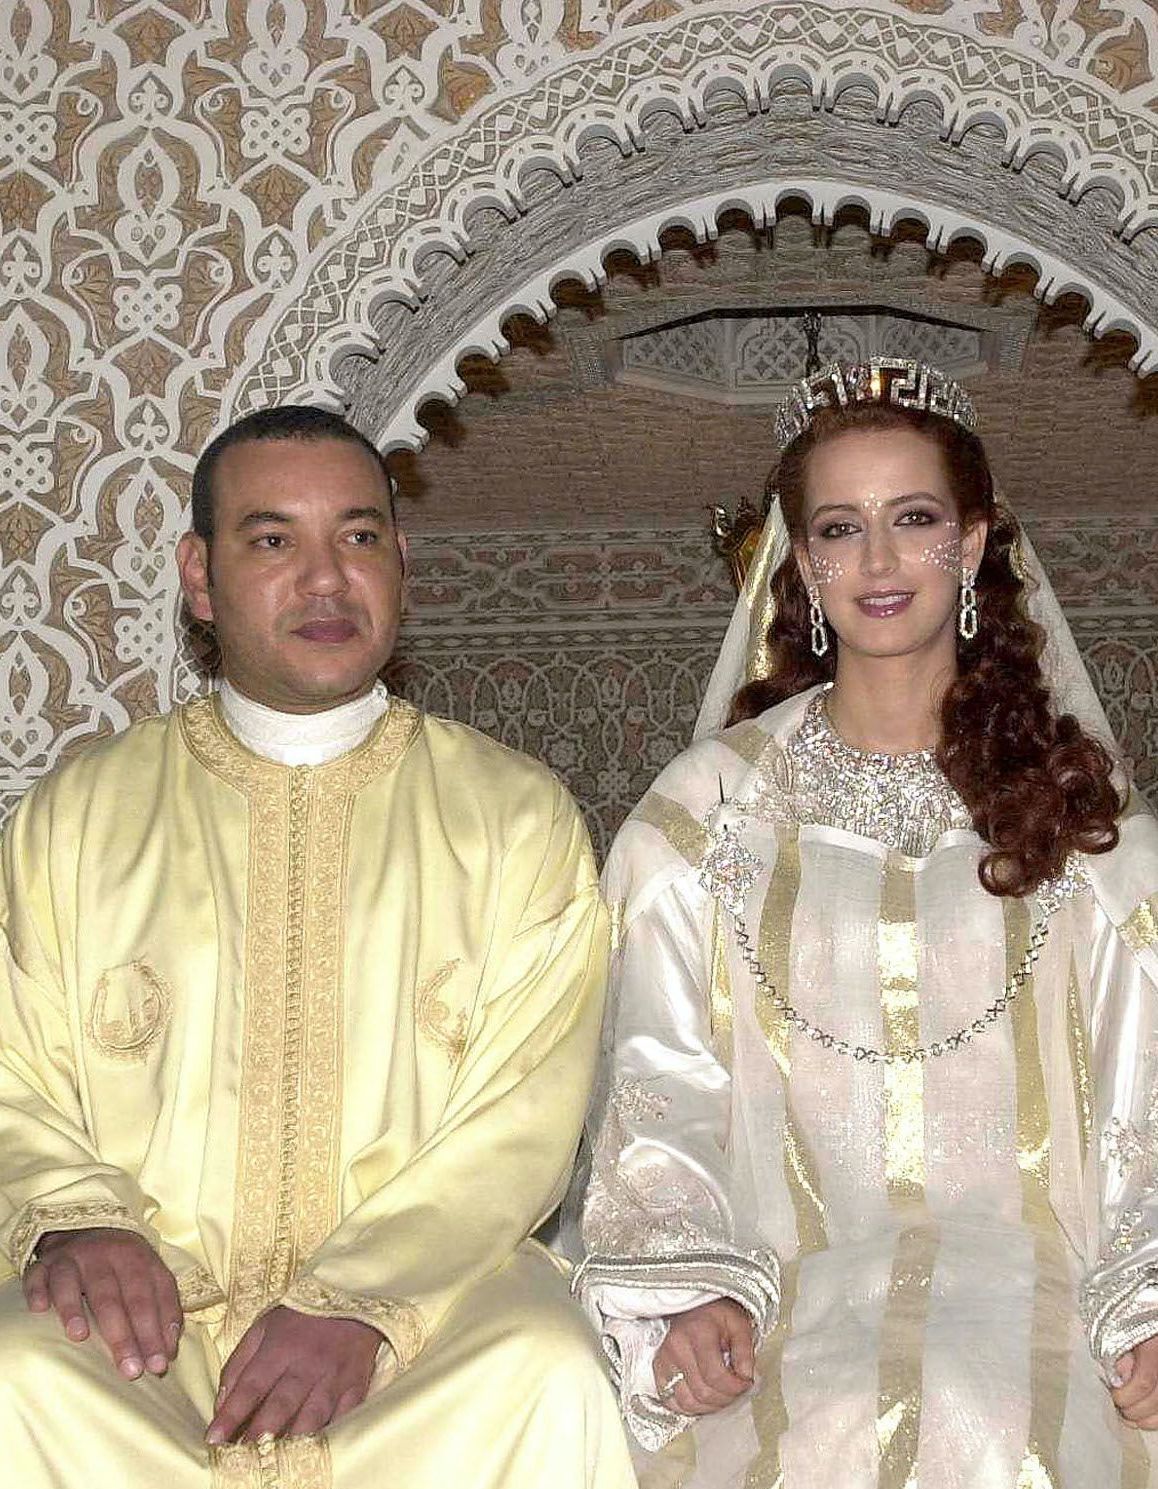 Mariage royal : Mohammed VI et Salma Bennani, ou la mystérieuse absence d’une princesse